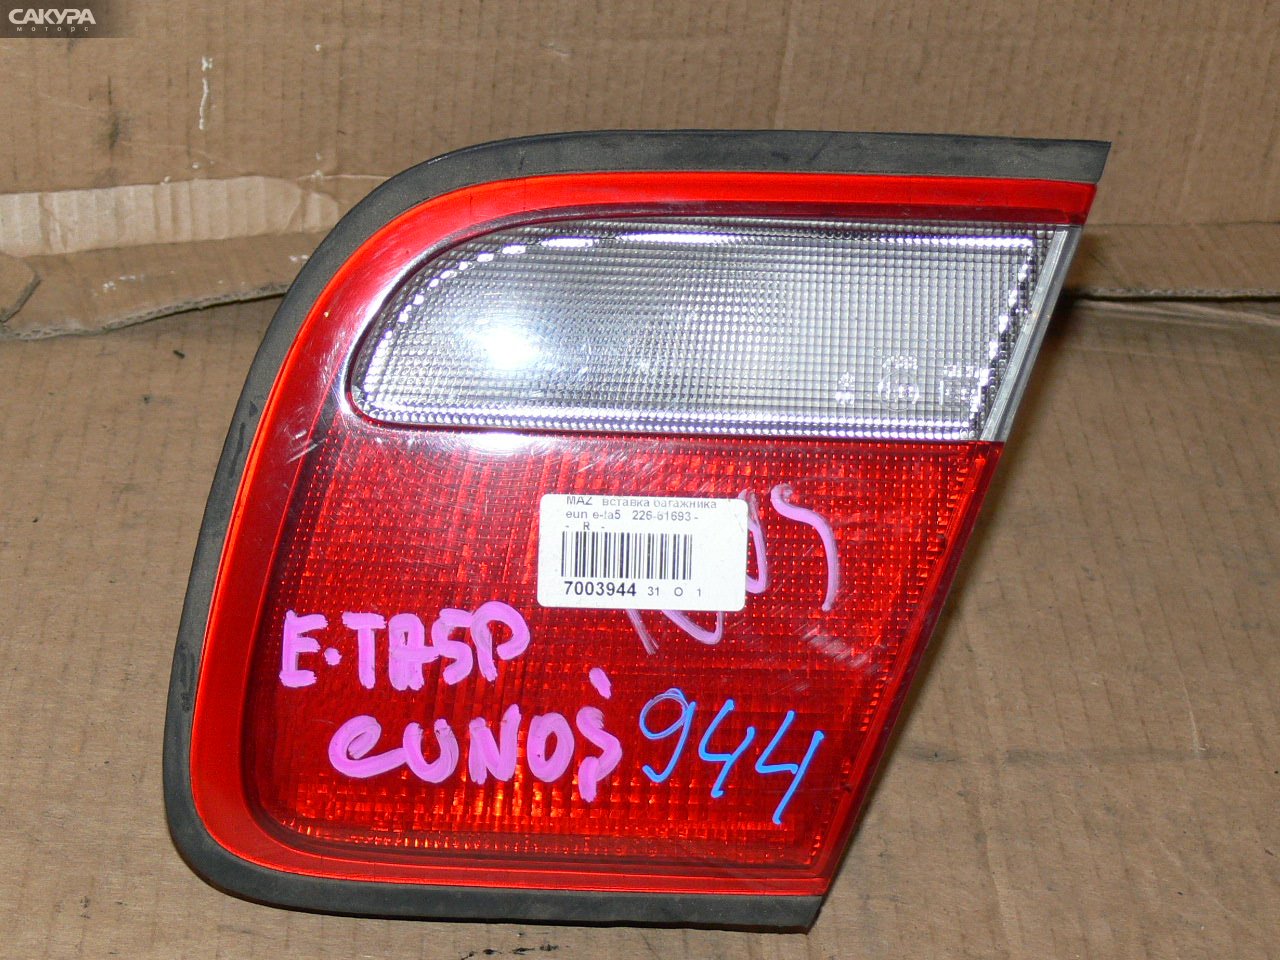 Фонарь вставка багажника правый Mazda Eunos 800 TA5P 226-61693: купить в Сакура Иркутск.